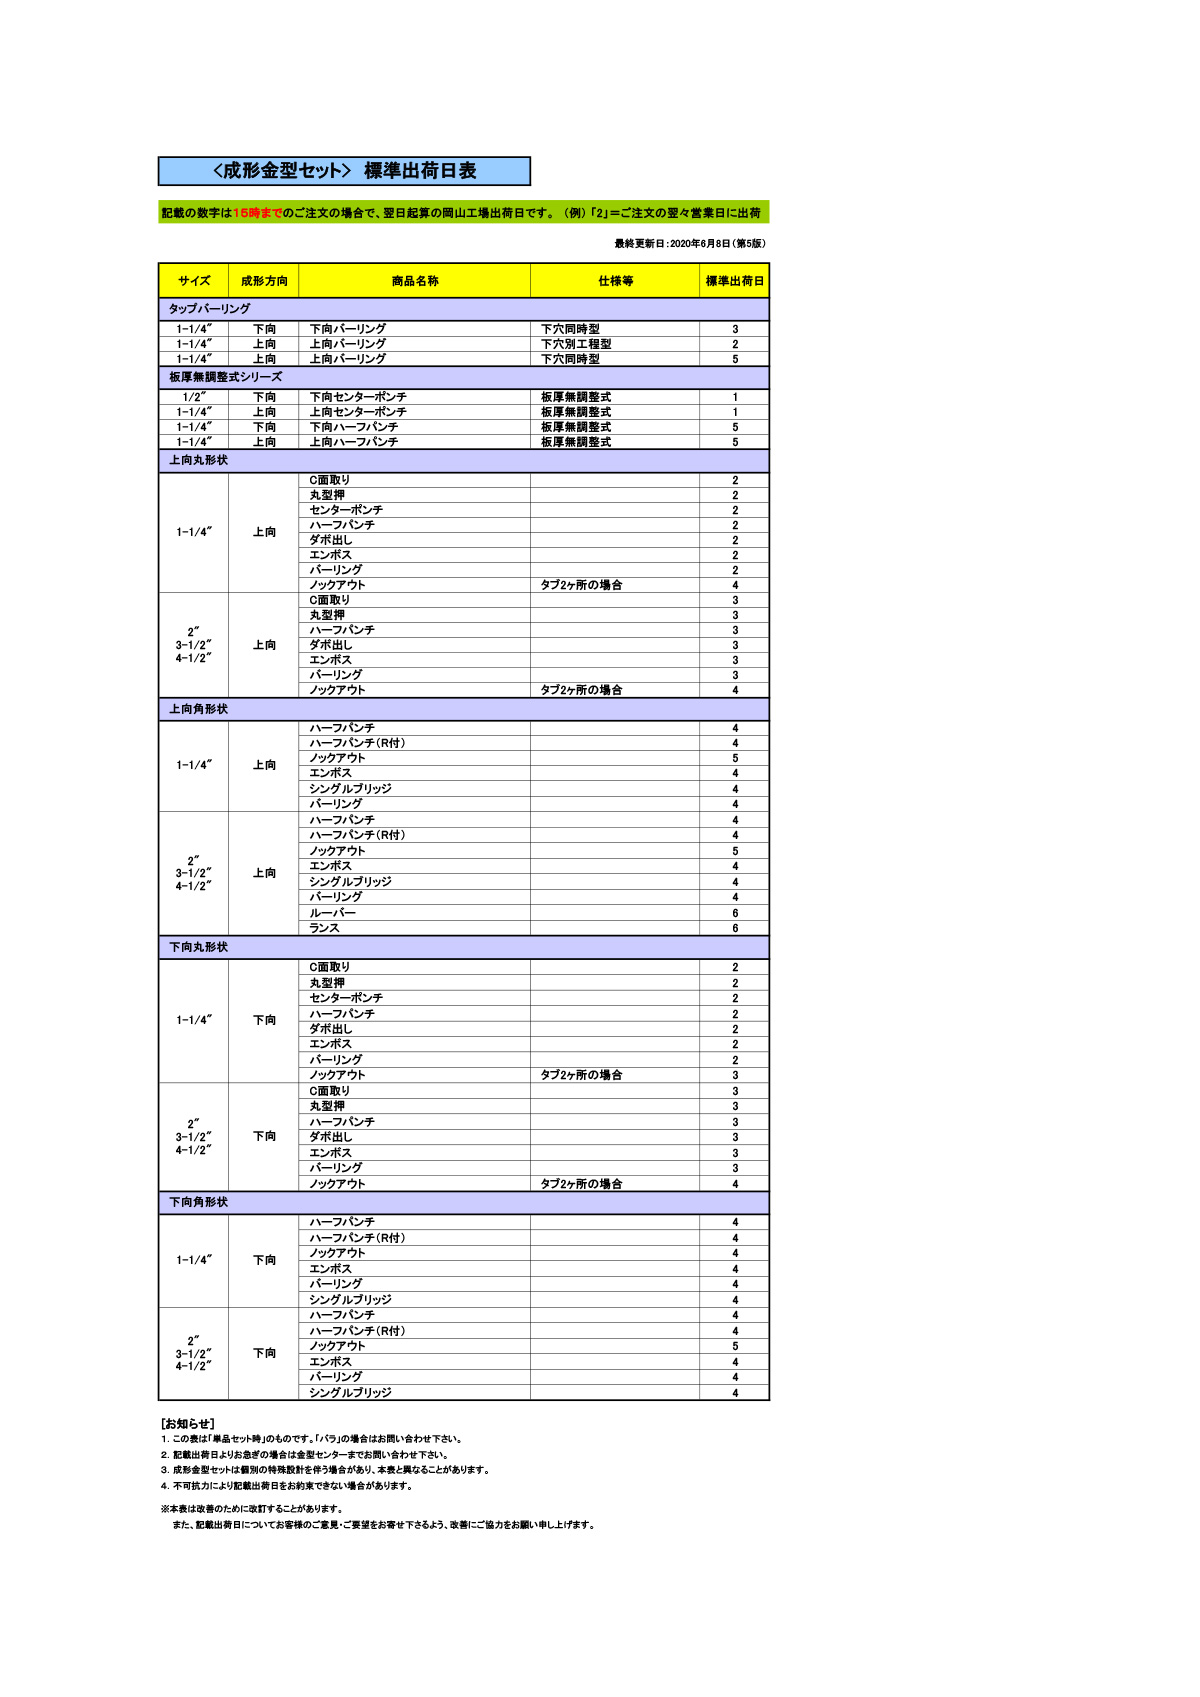 アマダロングタイプ金型価格表 標準出荷日表(成形金型)